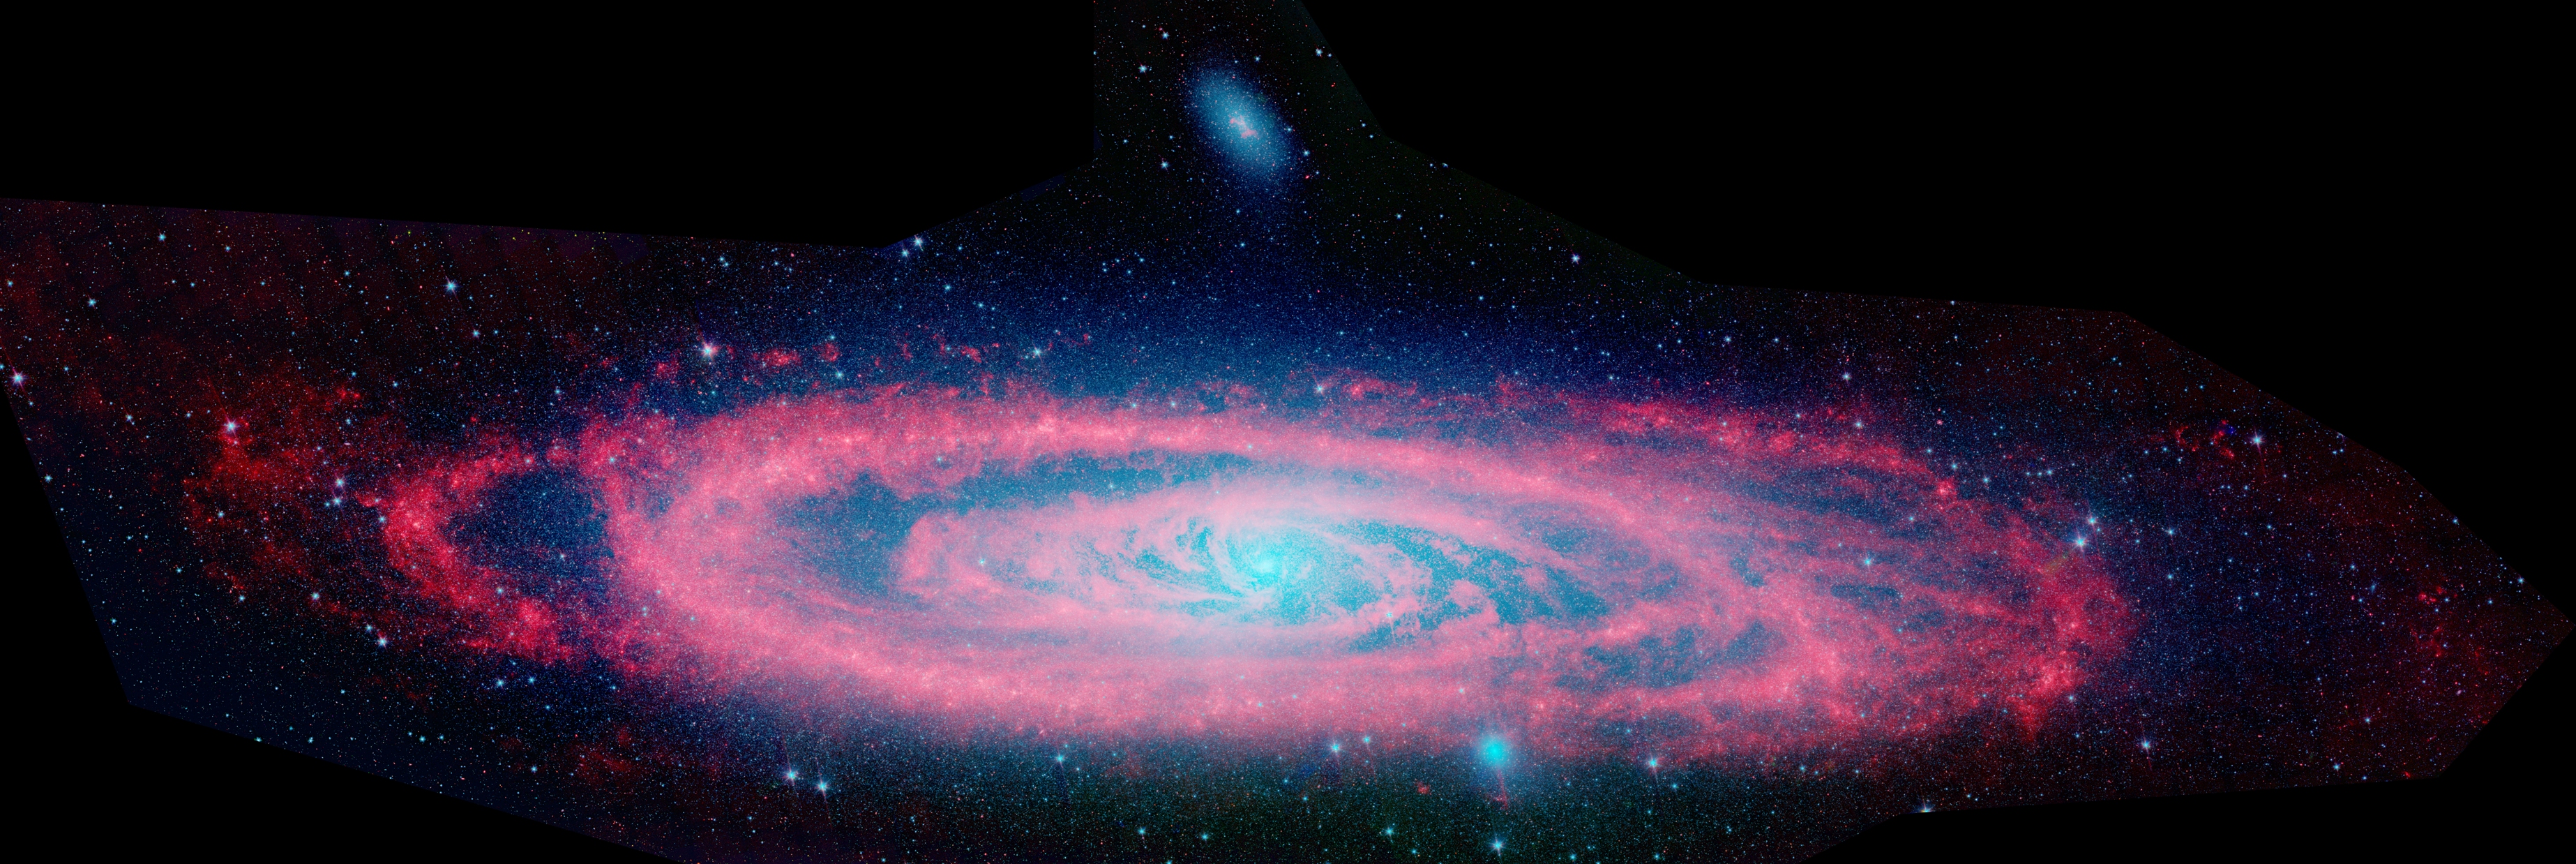 Description Andromeda Galaxy Spitzerjpg